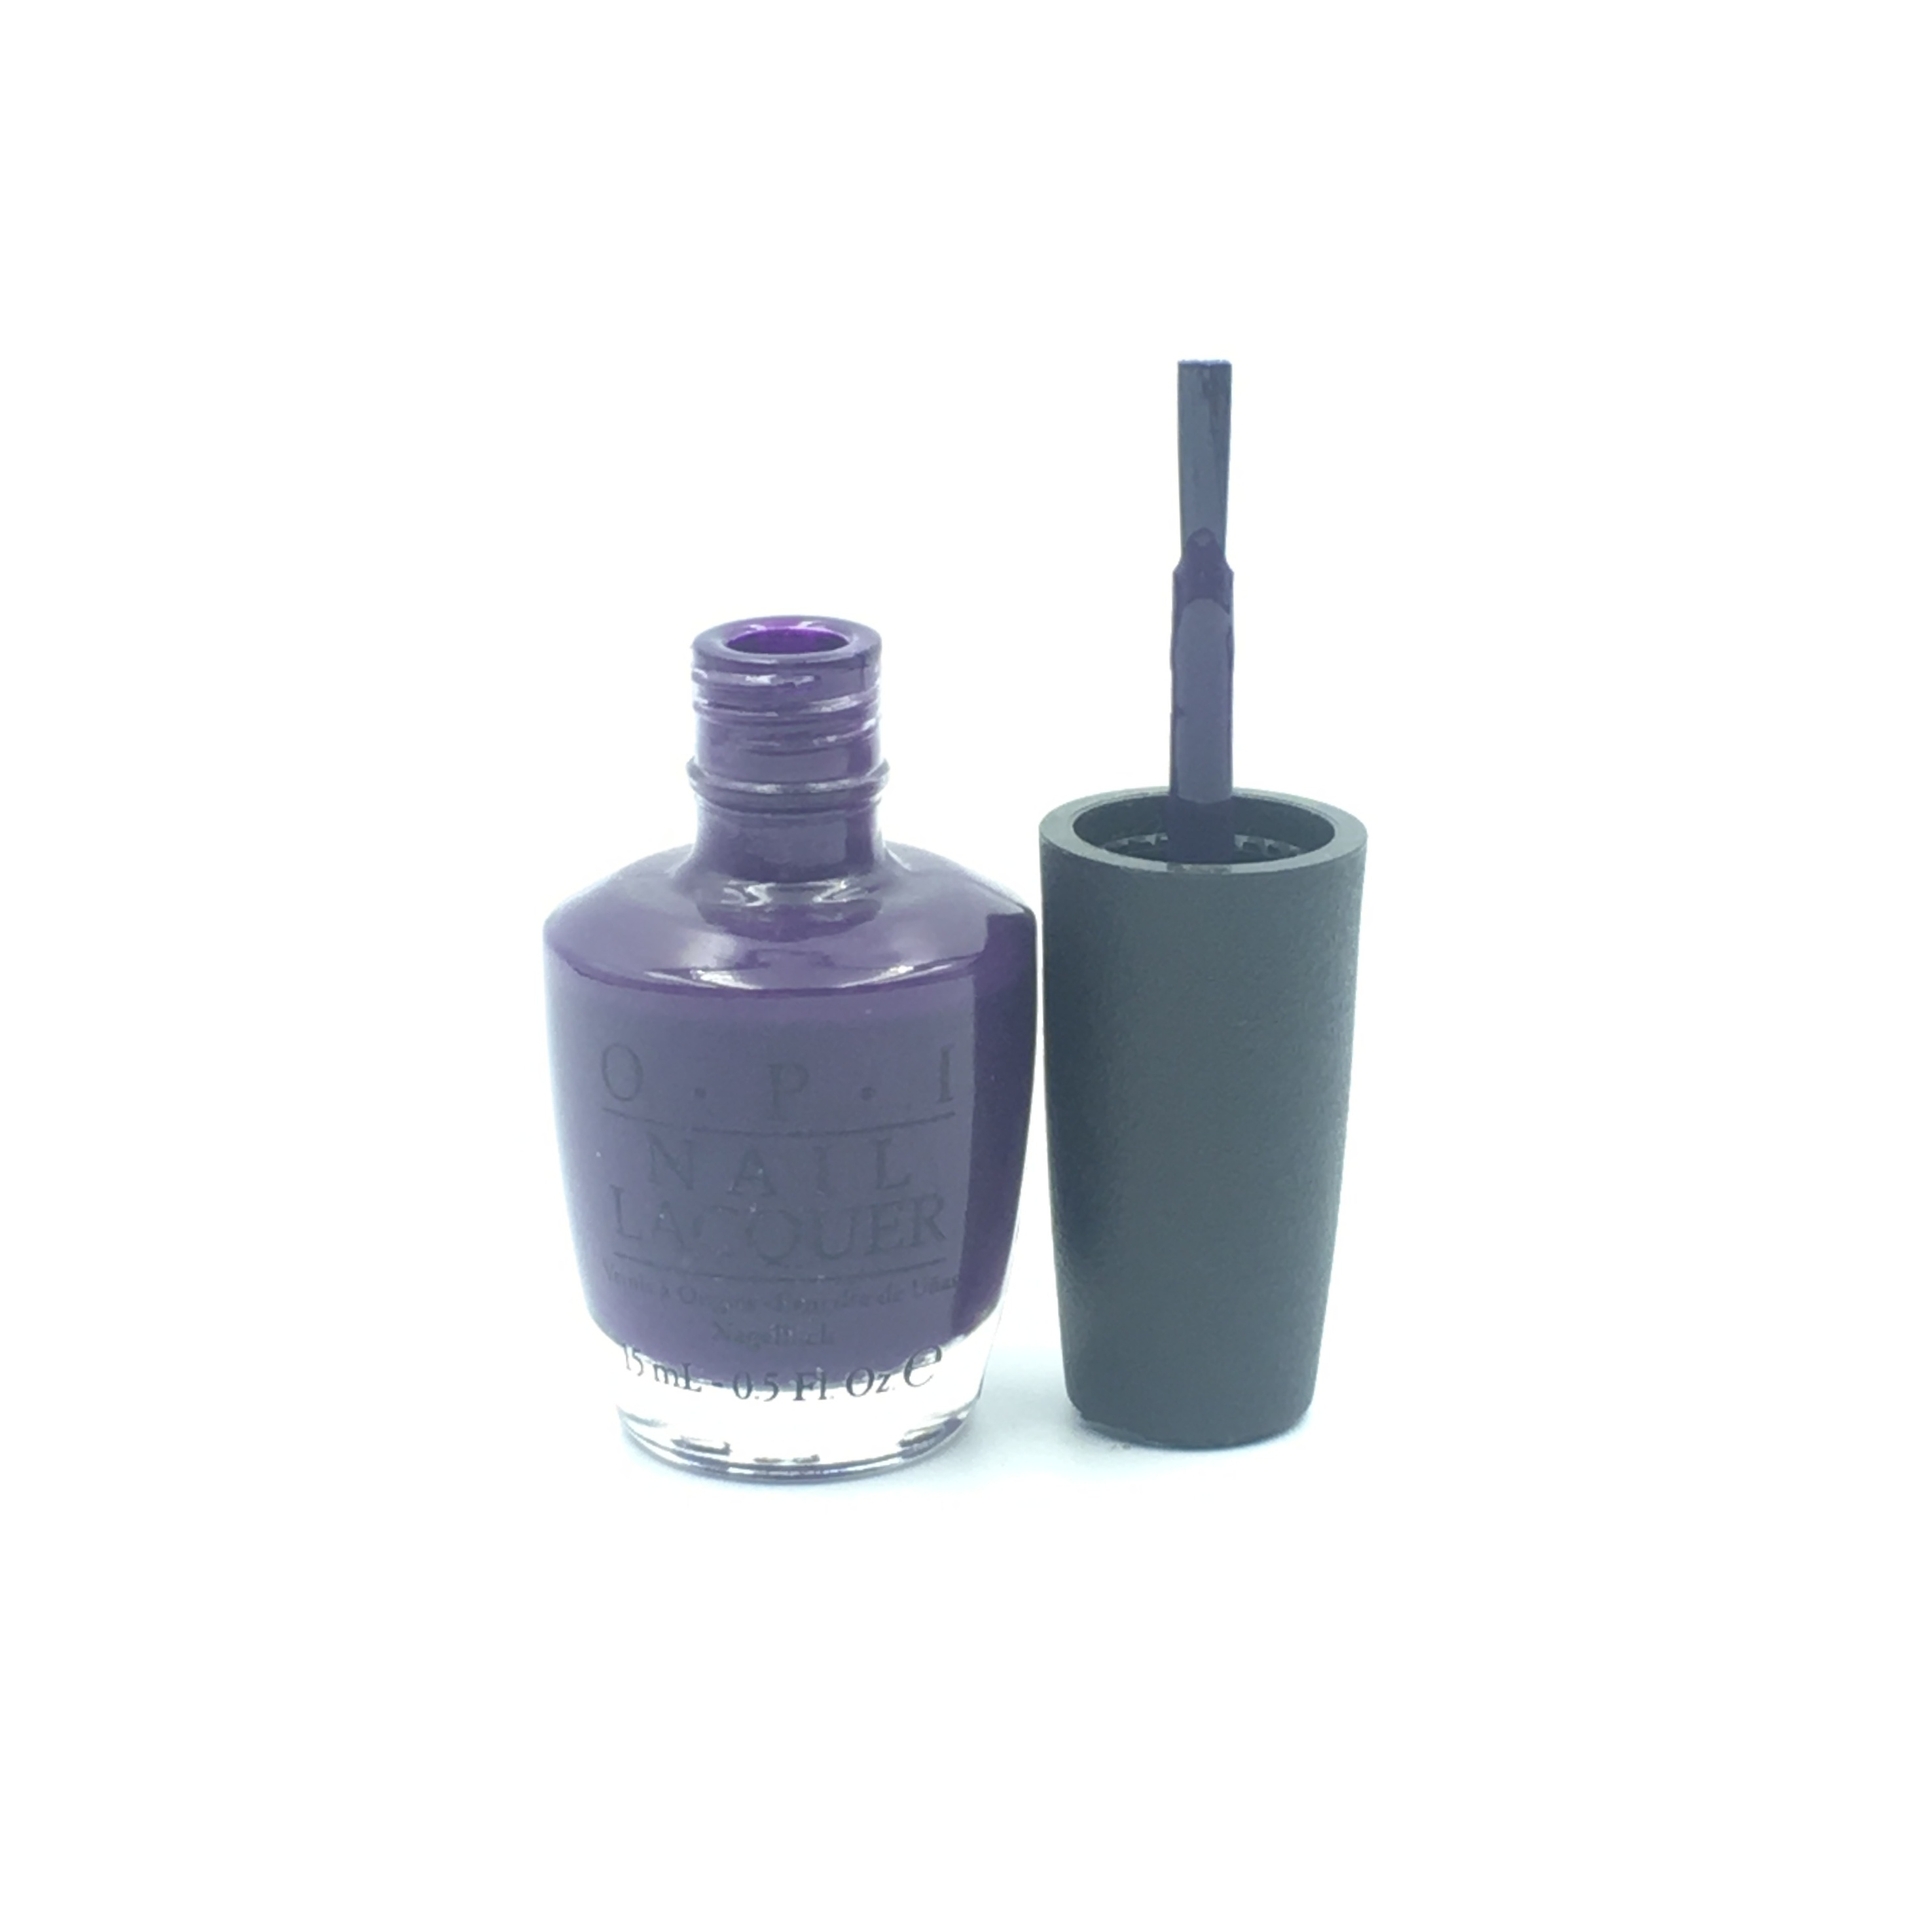 O,P.I Purple Nail Polish